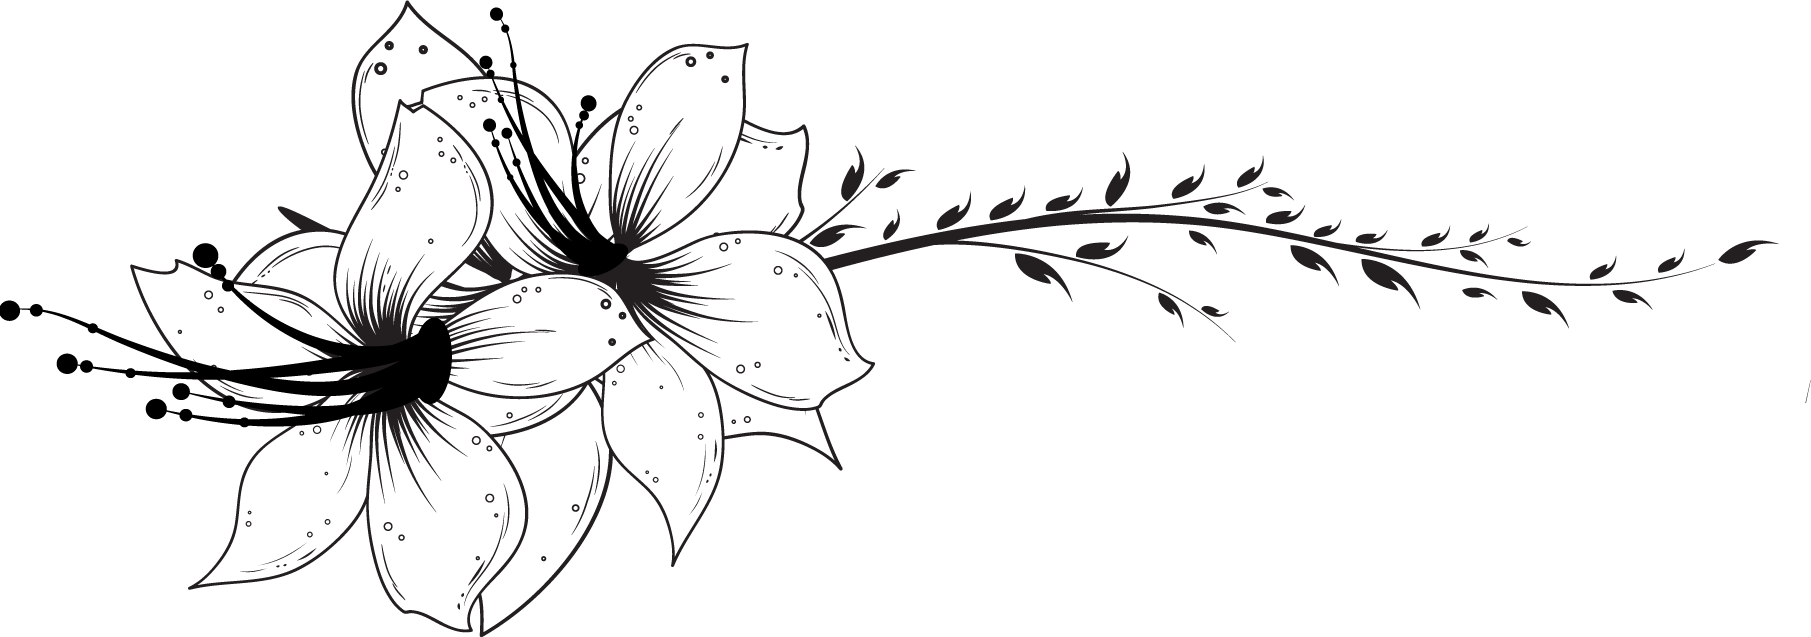 百合 ゆり の花の画像 イラスト フリー素材 No 190 白黒 ユリ ハイビスカス